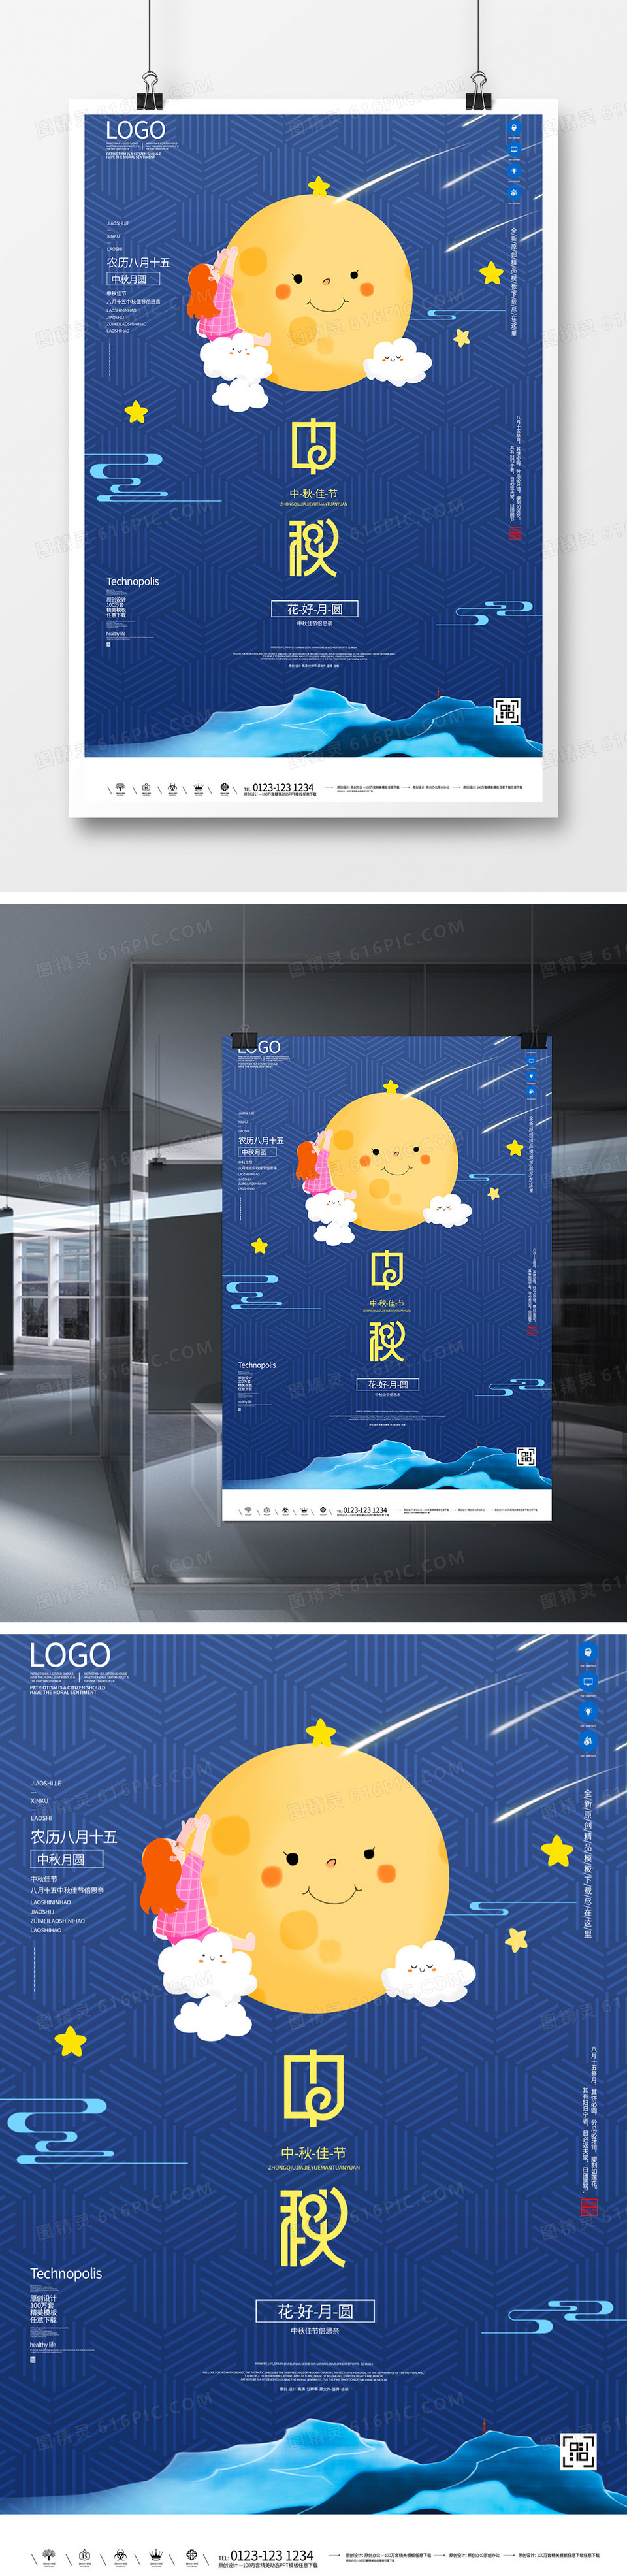 中秋佳节创意宣传海报模板设计  